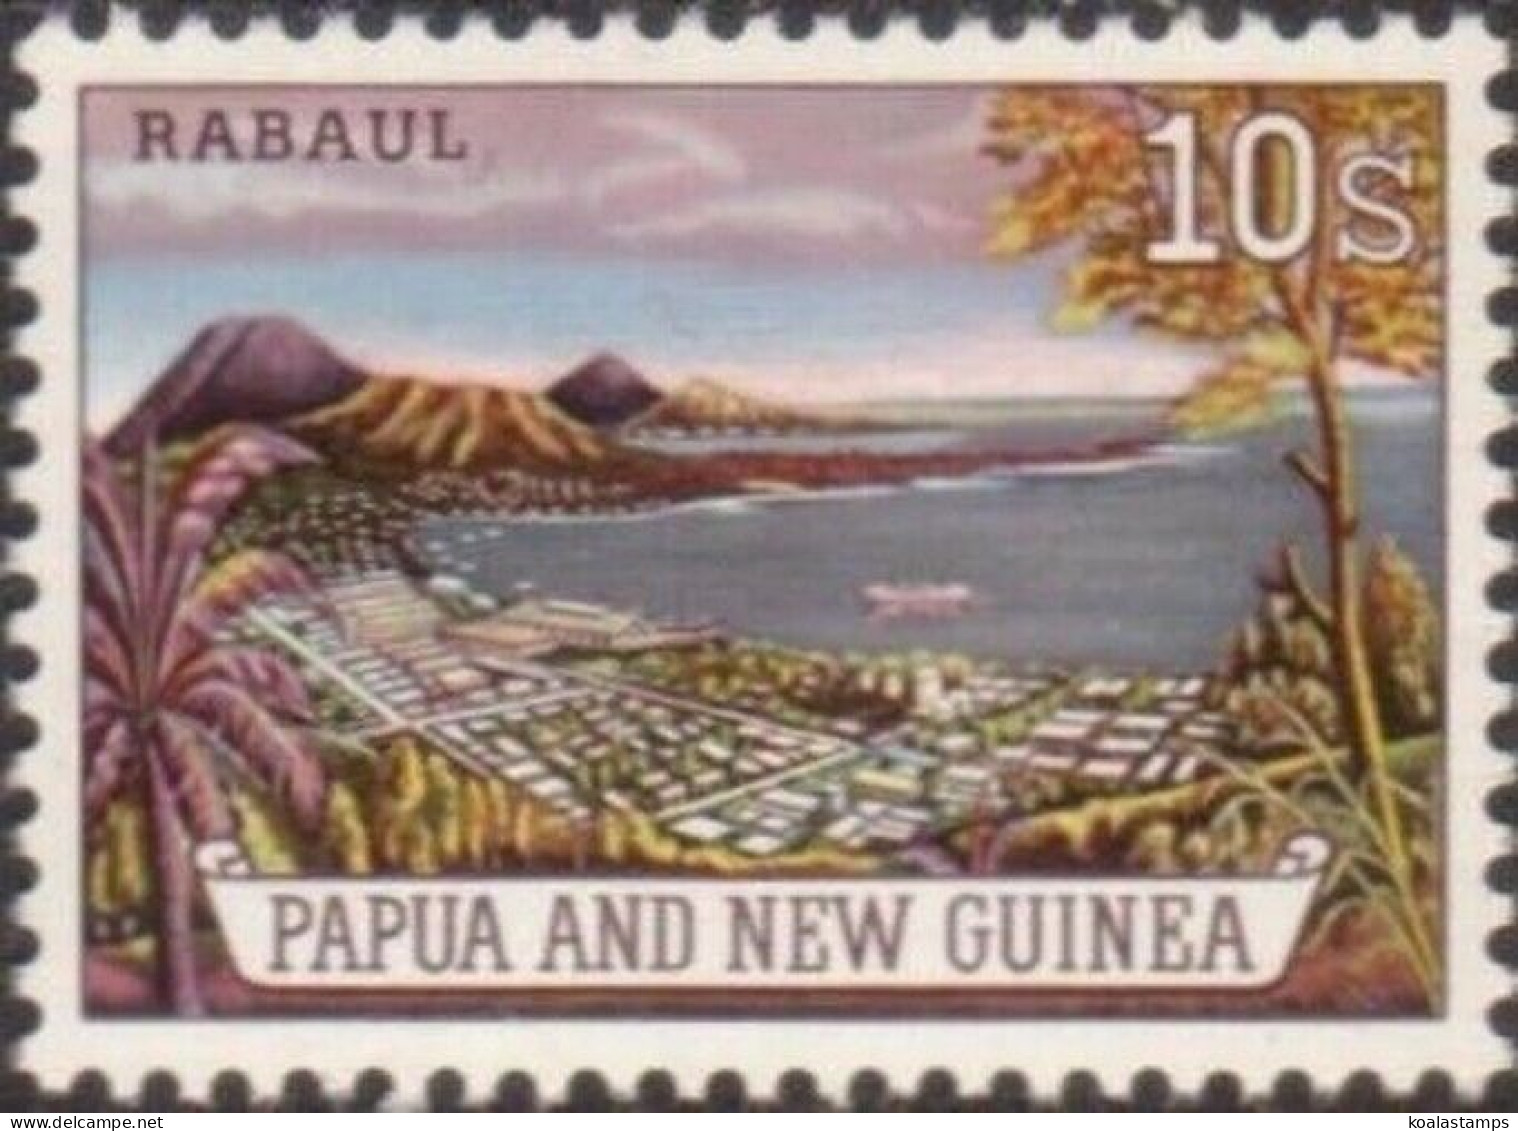 Papua New Guinea 1963 SG44 10/- Rabaul MNH - Papua New Guinea